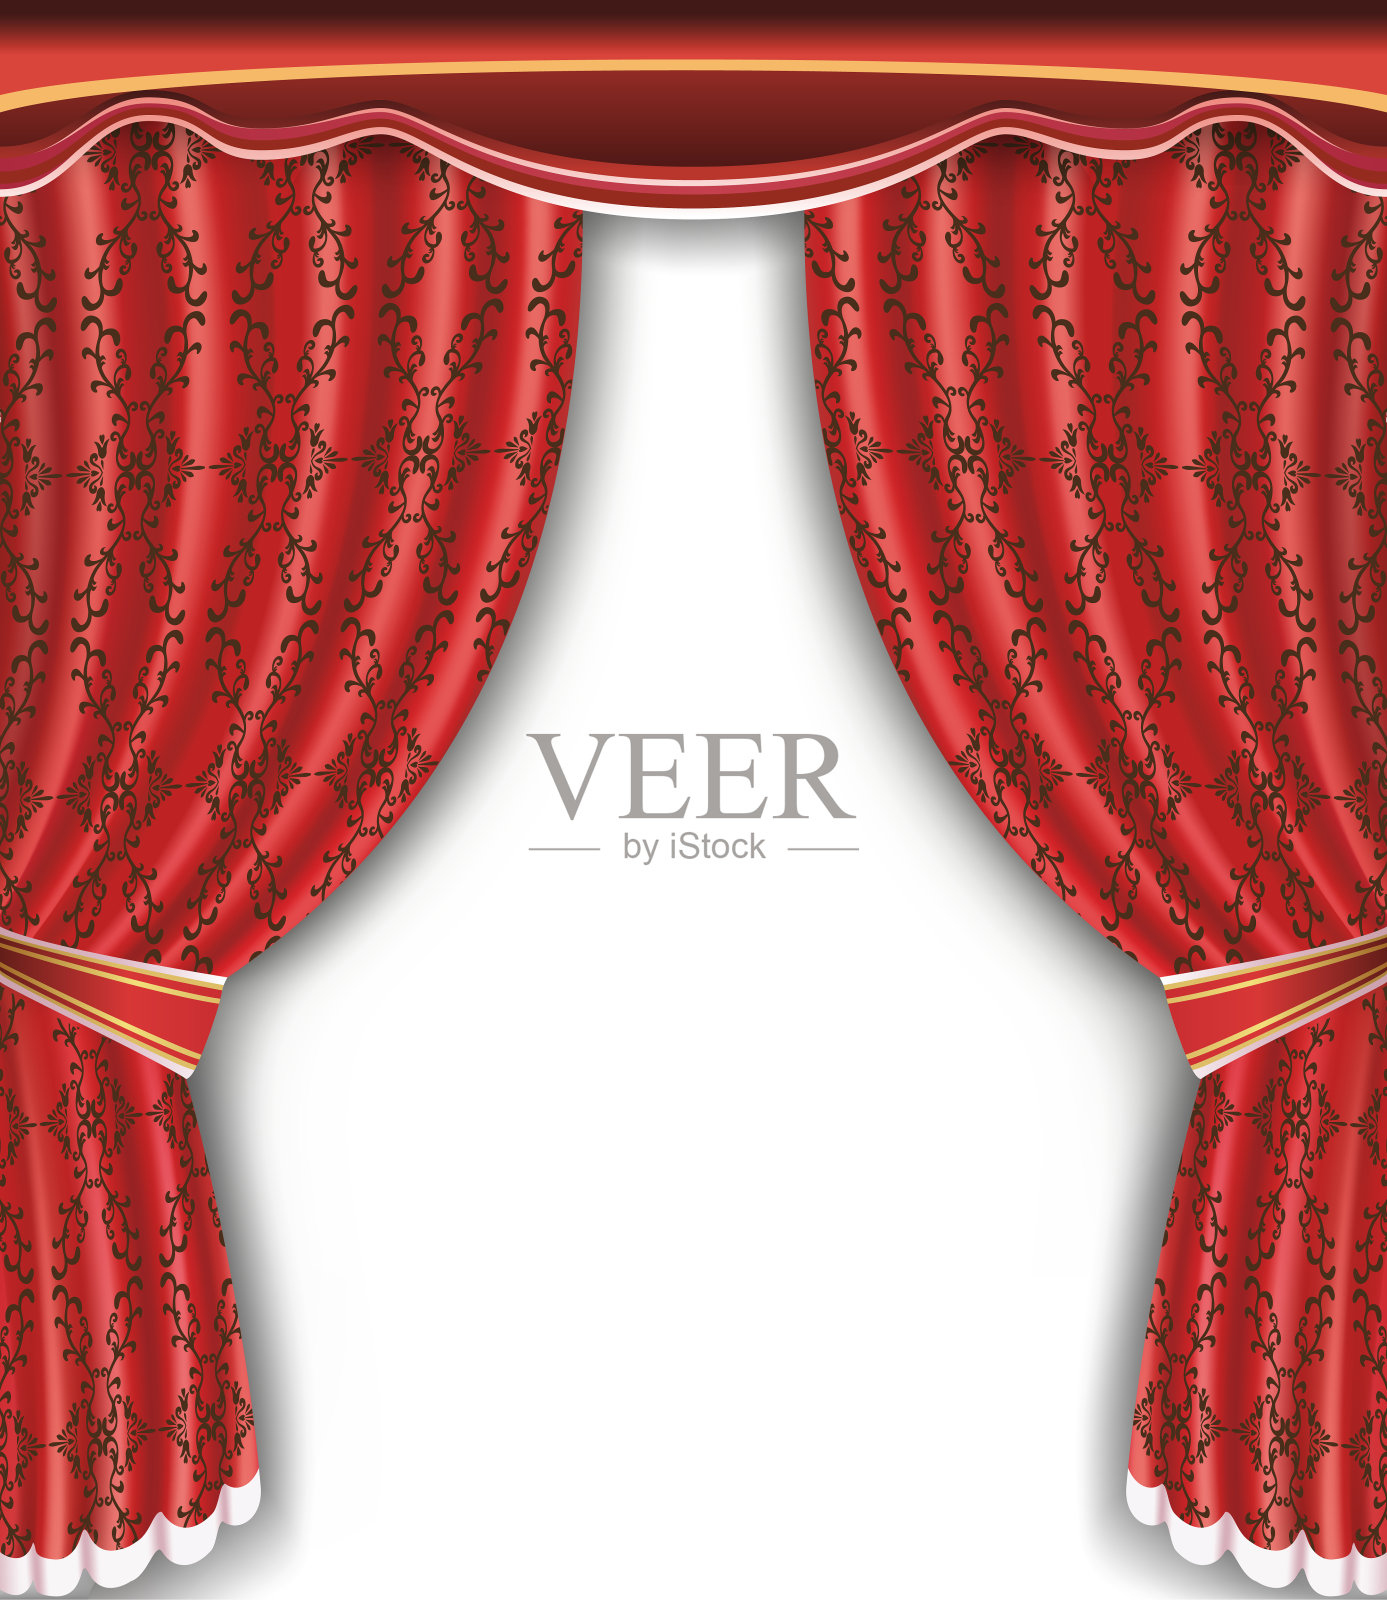 背景与开放的红色窗帘插画图片素材